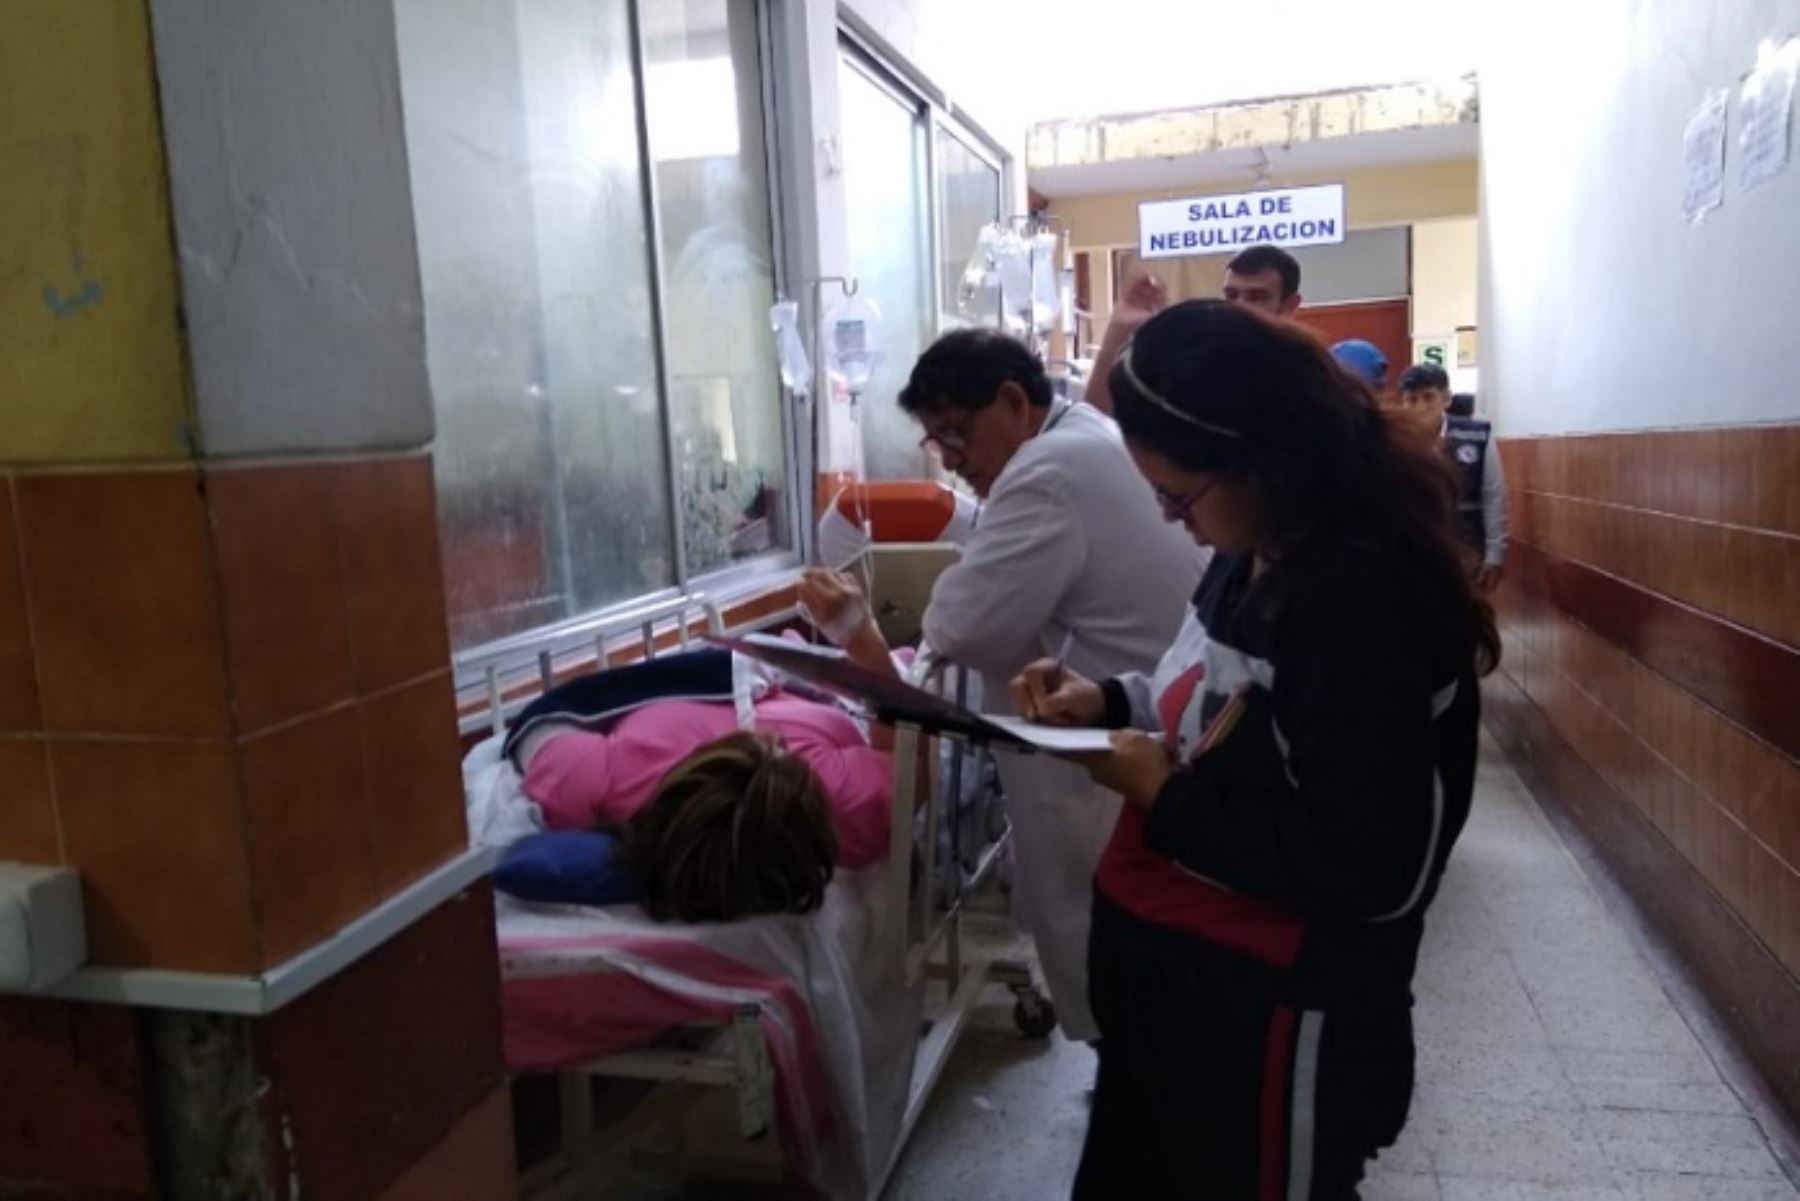 La cantidad de heridos trasladados originó que el hospital La Caleta de Chimbote sobrepase su capacidad de atención, tanto en personal como en logística de camas.